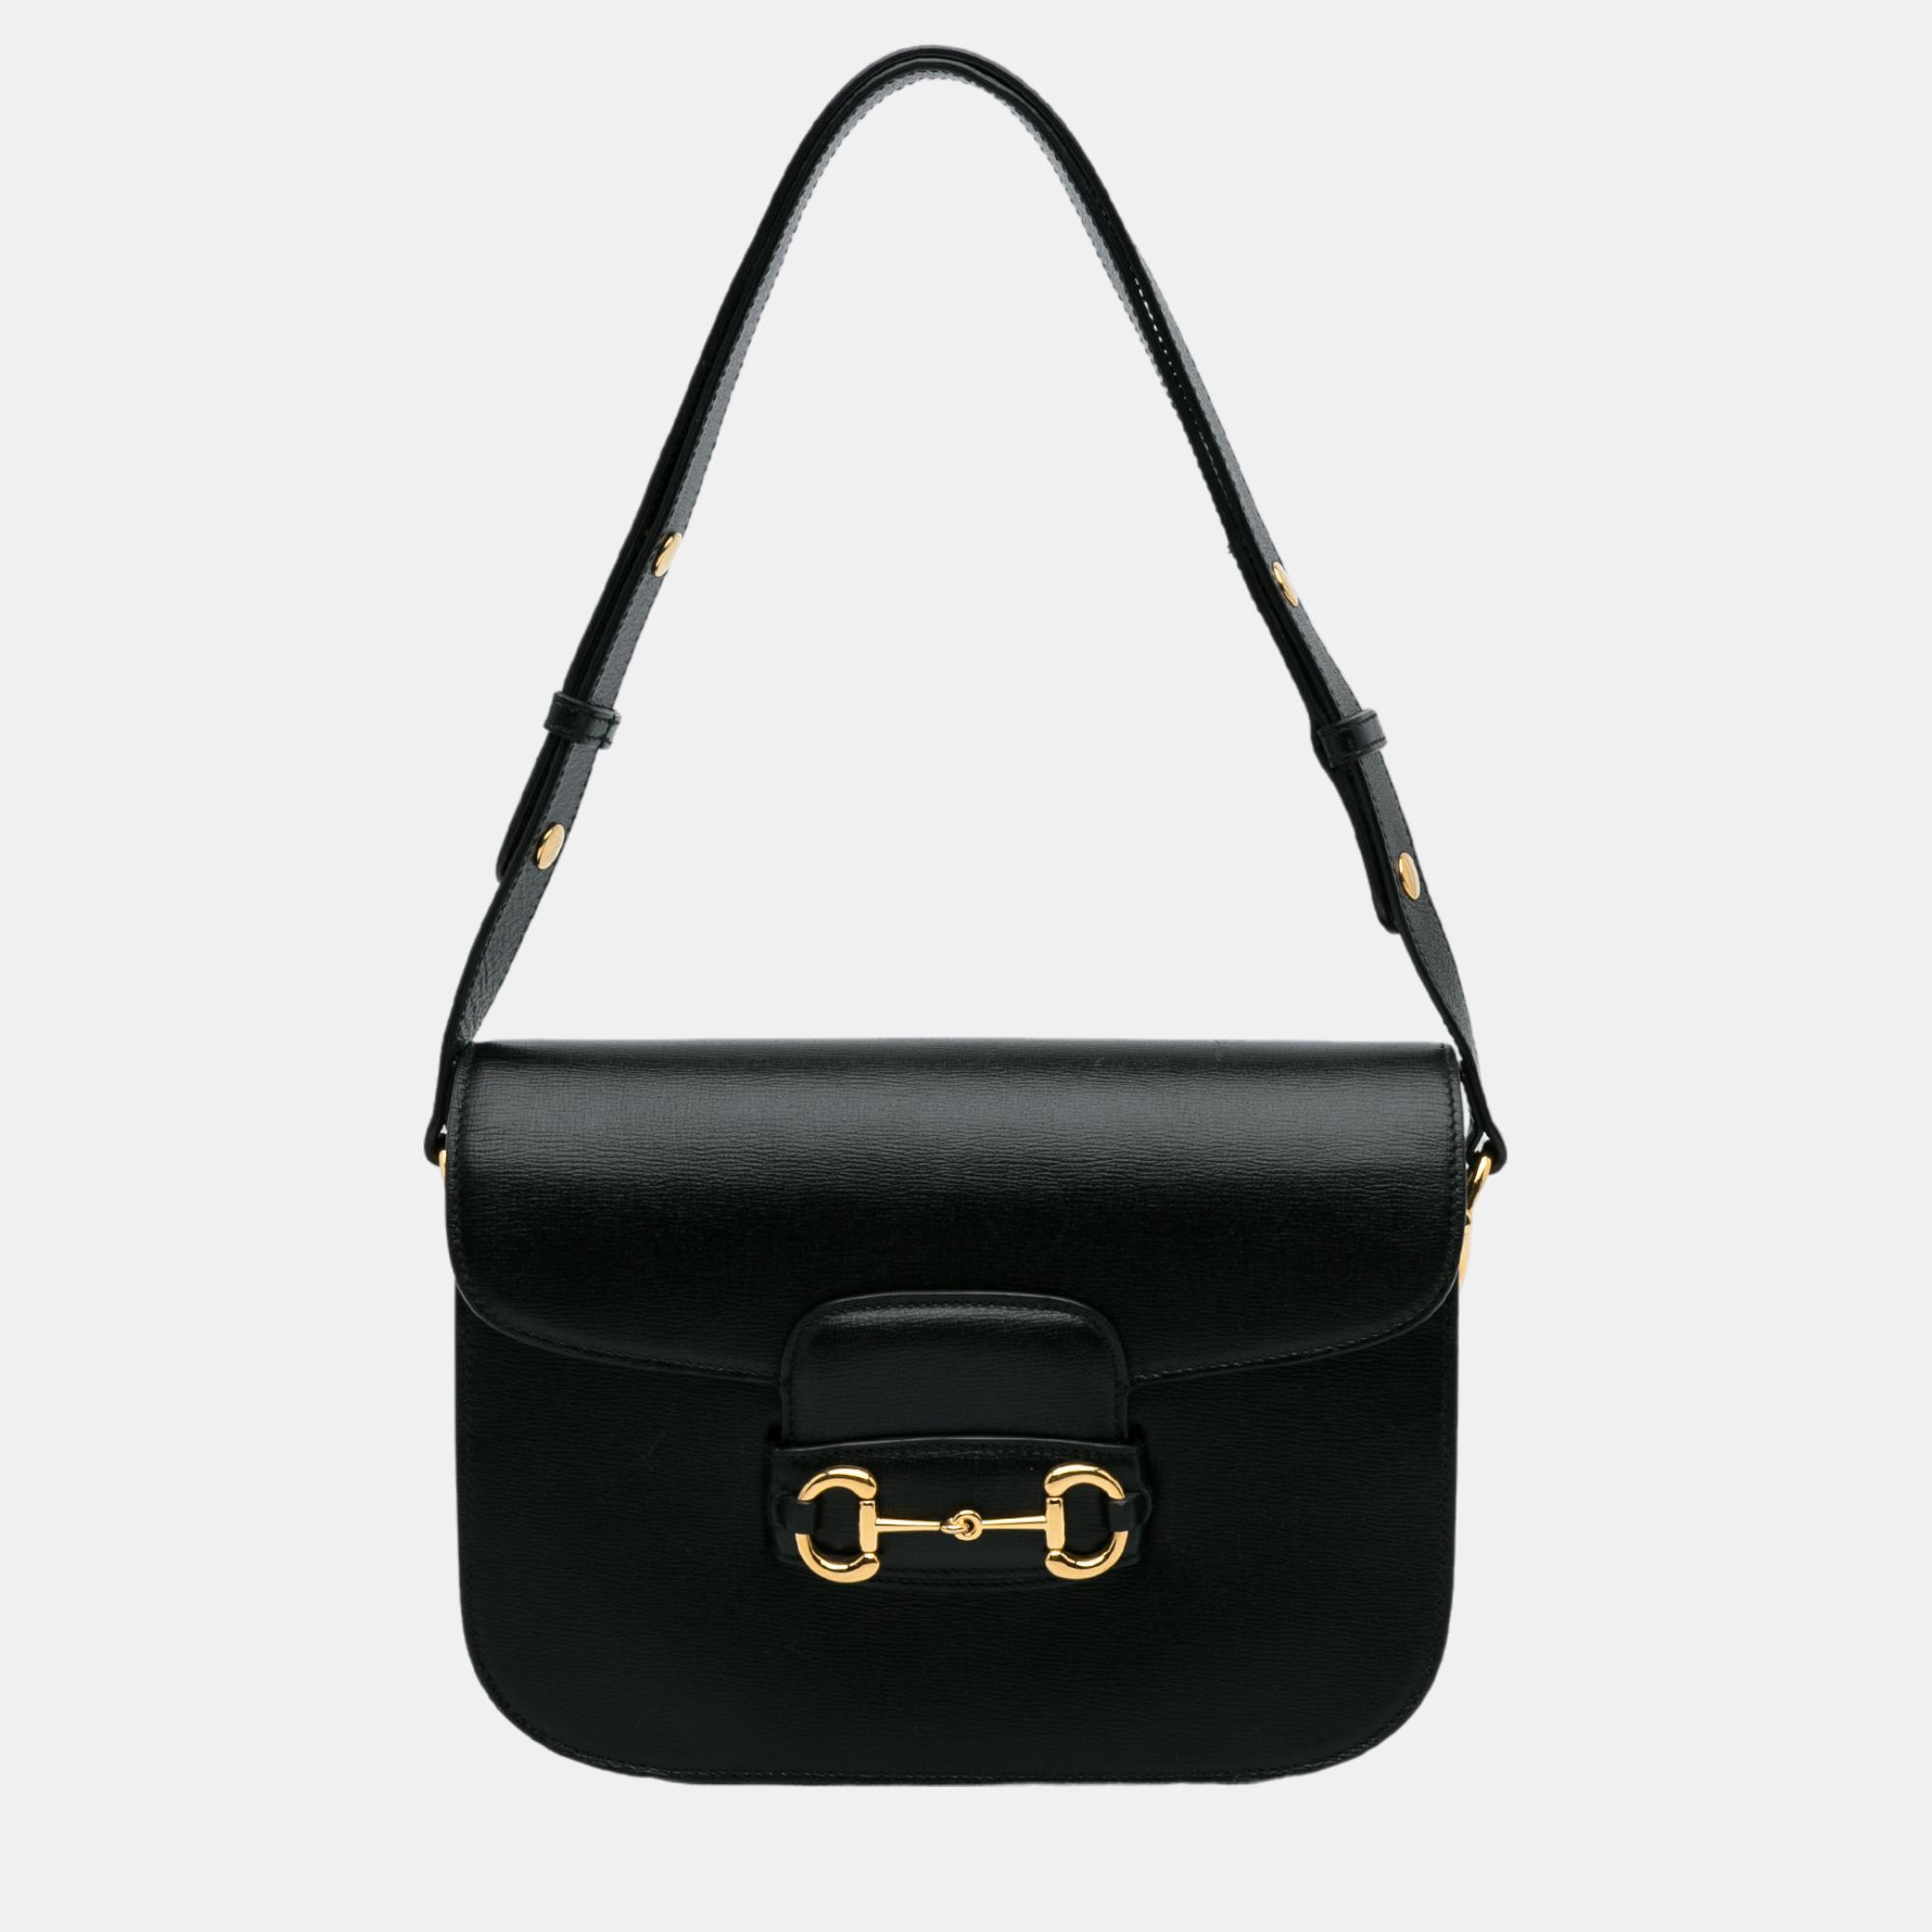 Gucci Black 1955 Horsebit Shoulder Bag